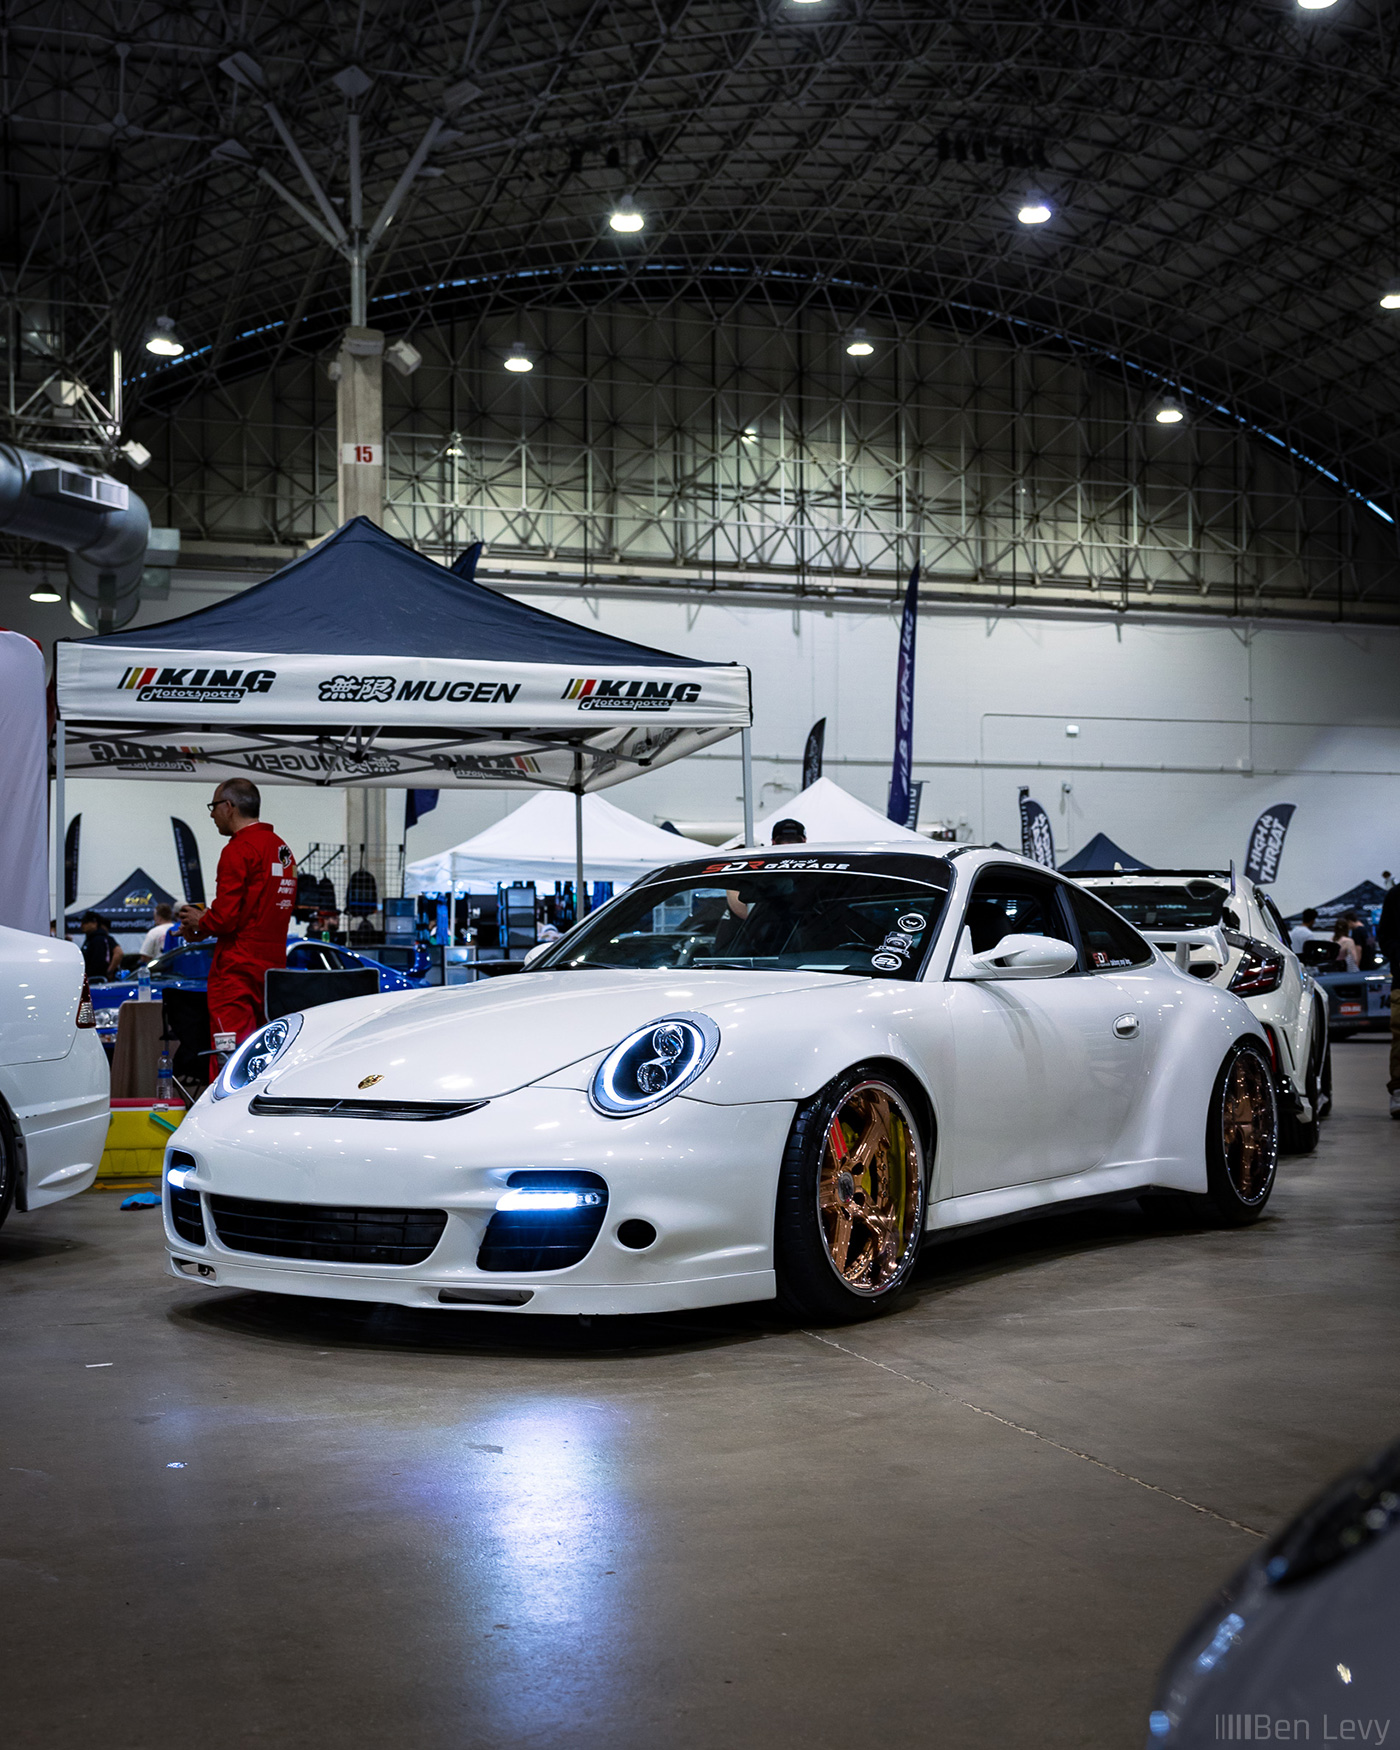 Widebody Porsche 997 at Wekfest Chicago